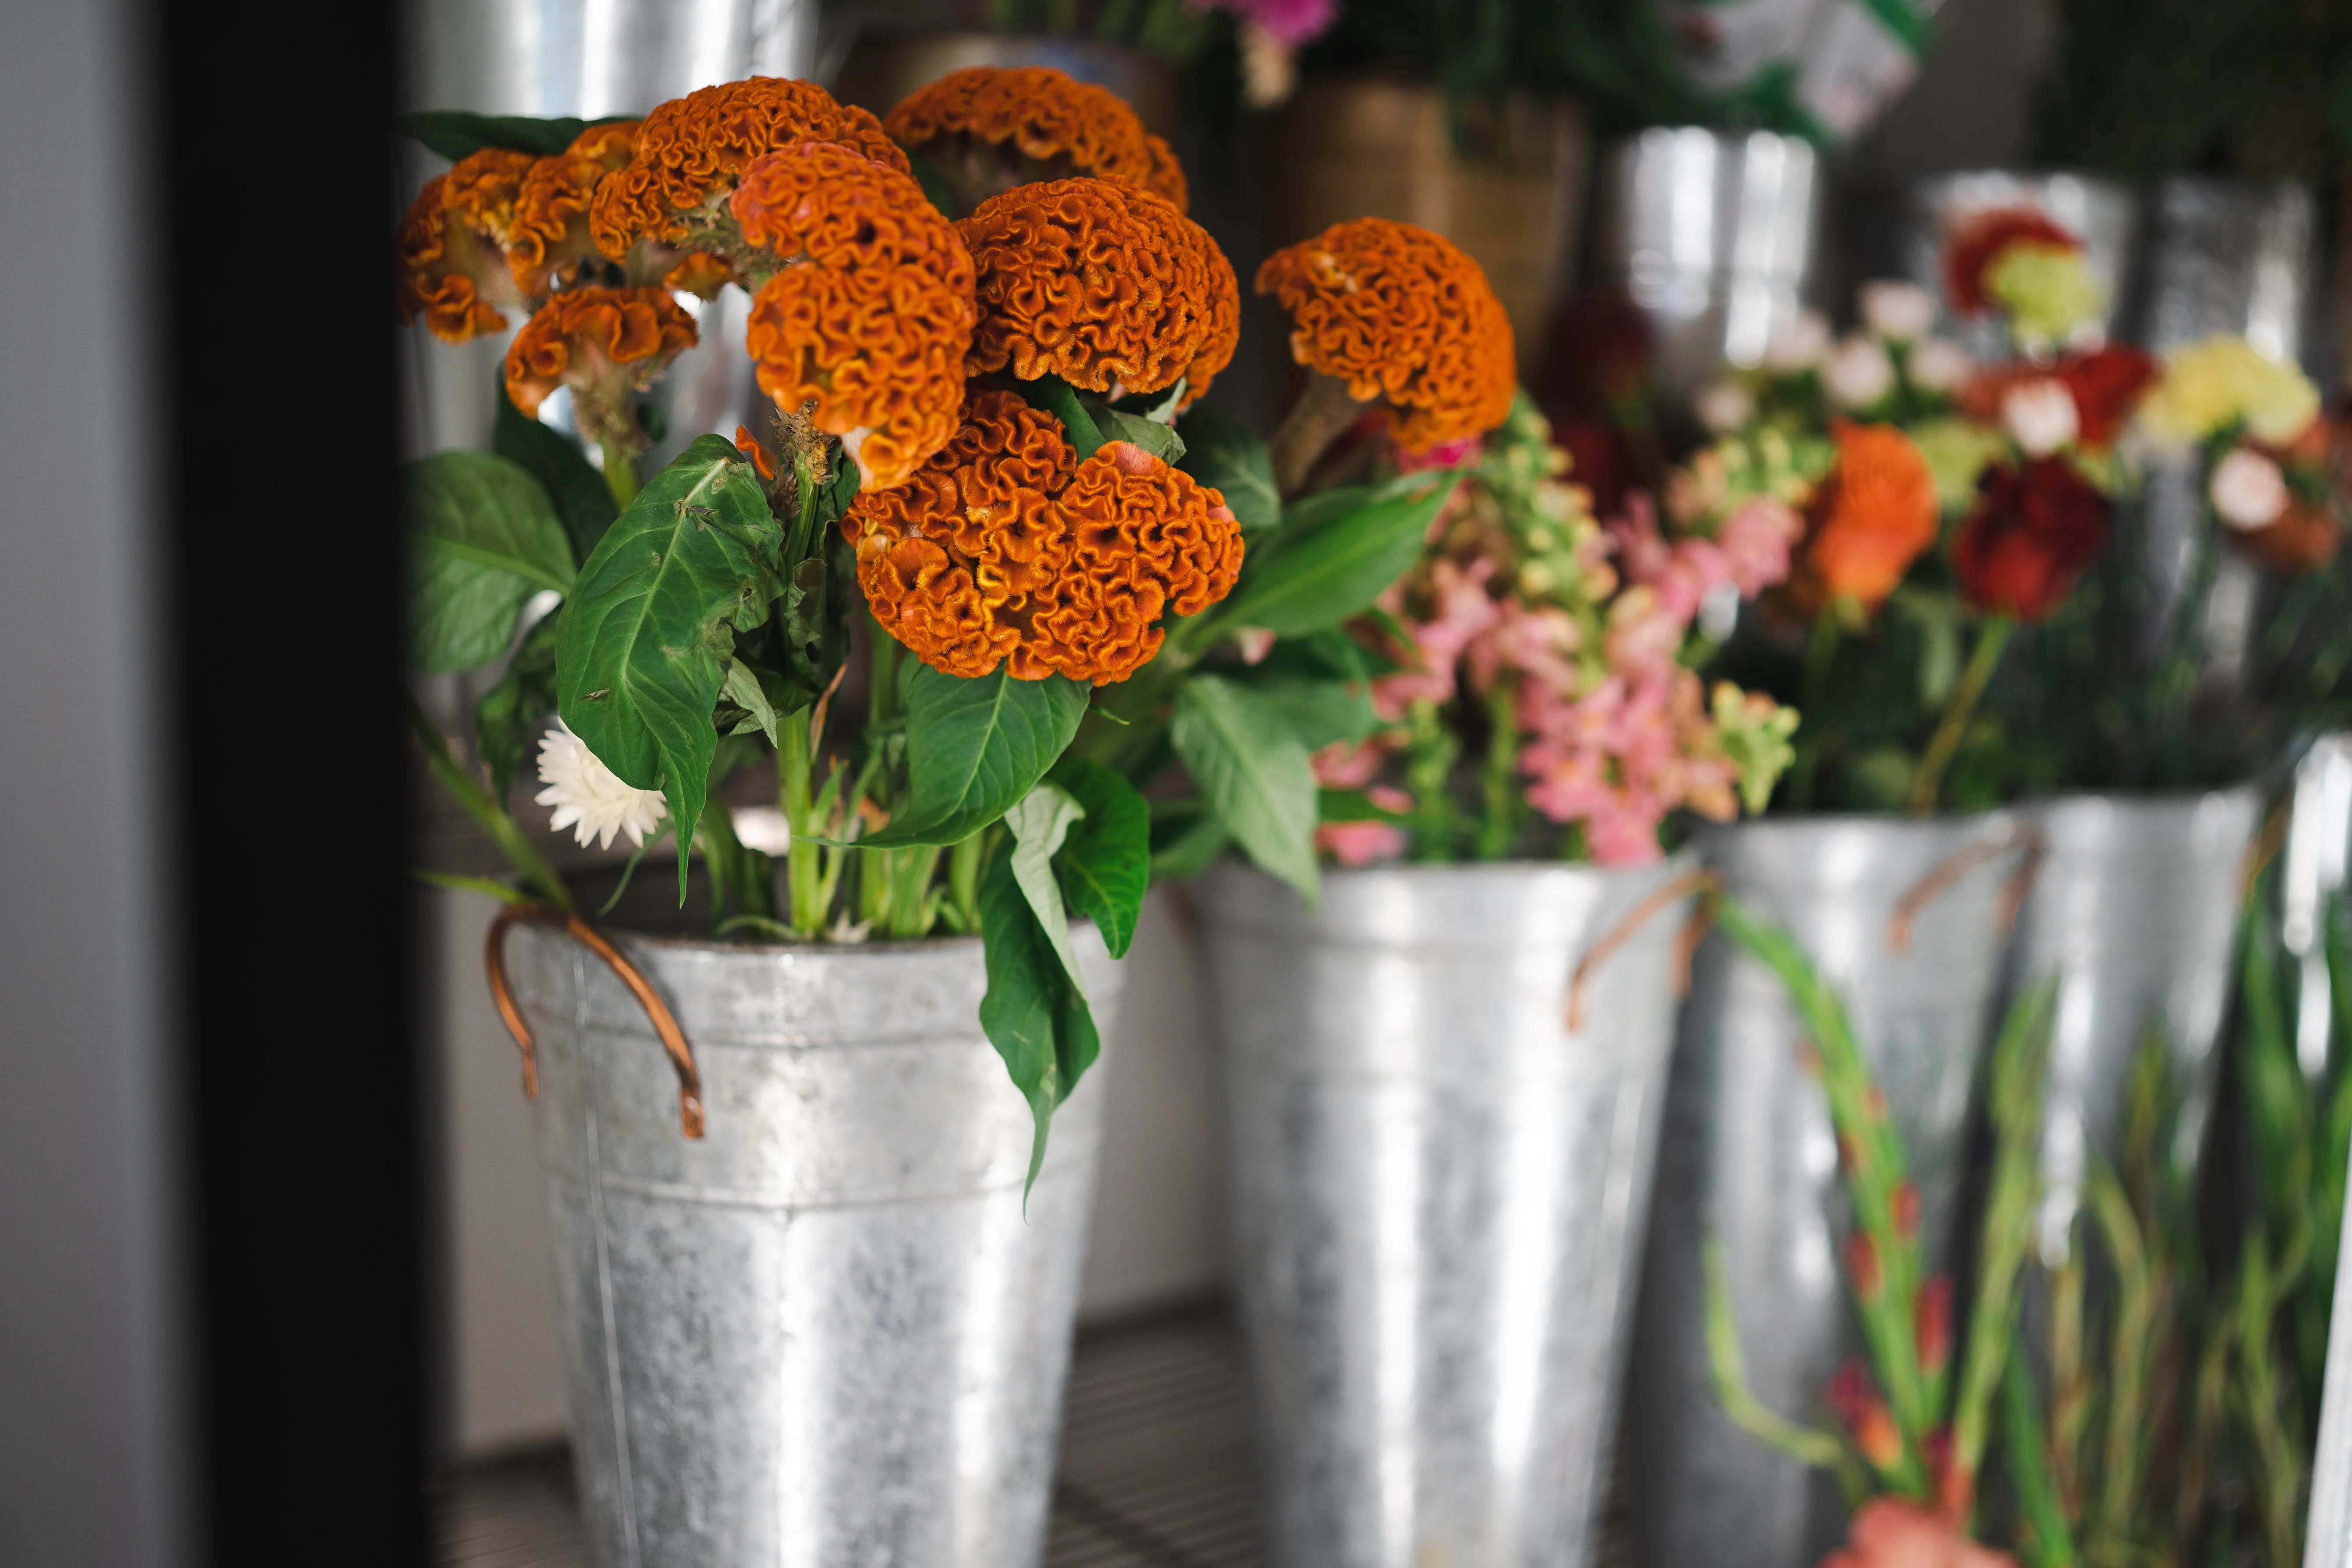 seasonal flower school in Liverpool. Flower classes include learn how to make a seasonal handtied bouquet